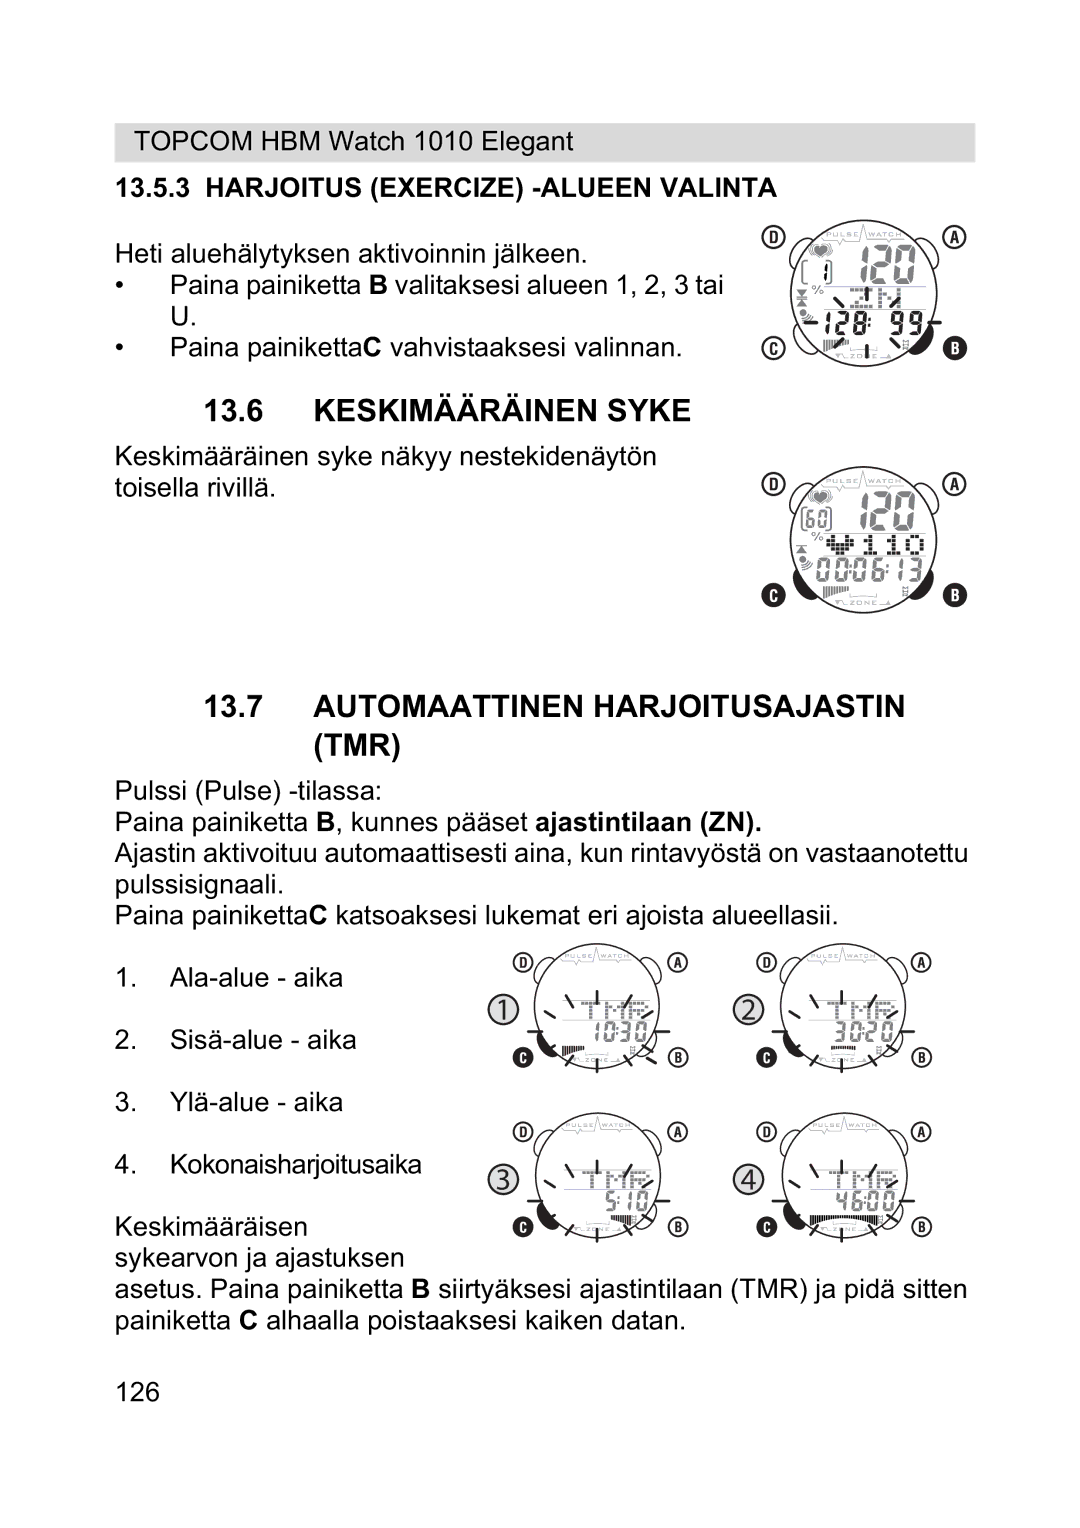 Topcom 1010 Elelgant manual Keskimääräinen Syke, Automaattinen Harjoitusajastin TMR, Harjoitus Exercize -ALUEEN Valinta 